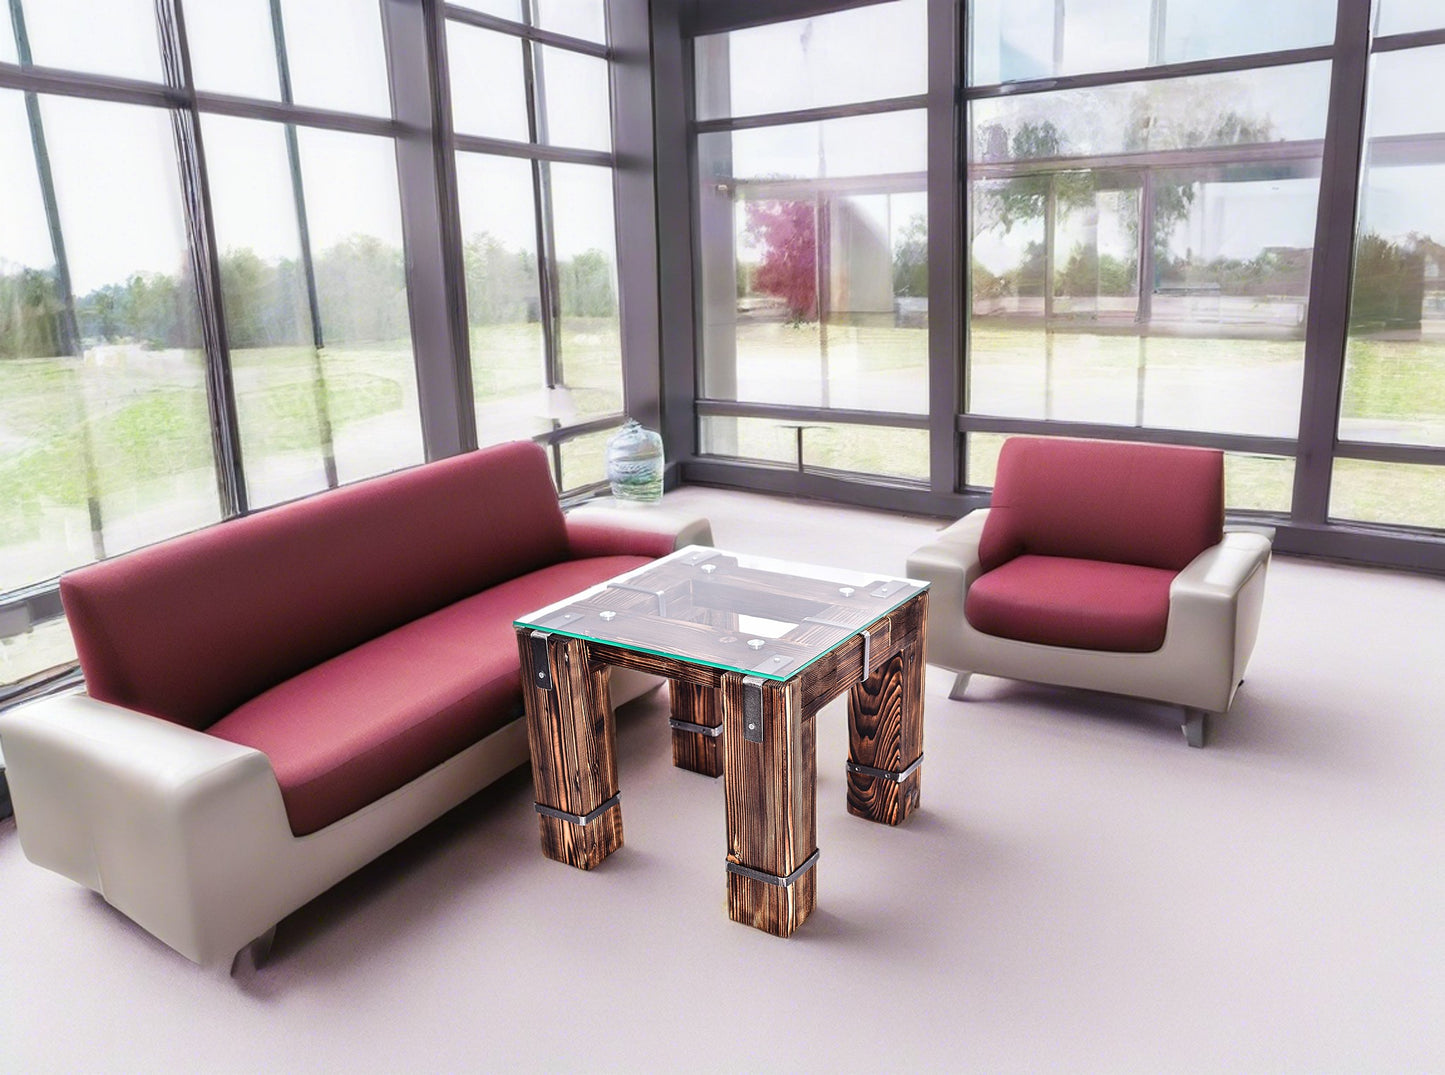 CHYRKA® Stolik kawowy DROHOBYCZ stół do salonu LD Loft Vintage Bar Industrial design handmade drewno szkło metal